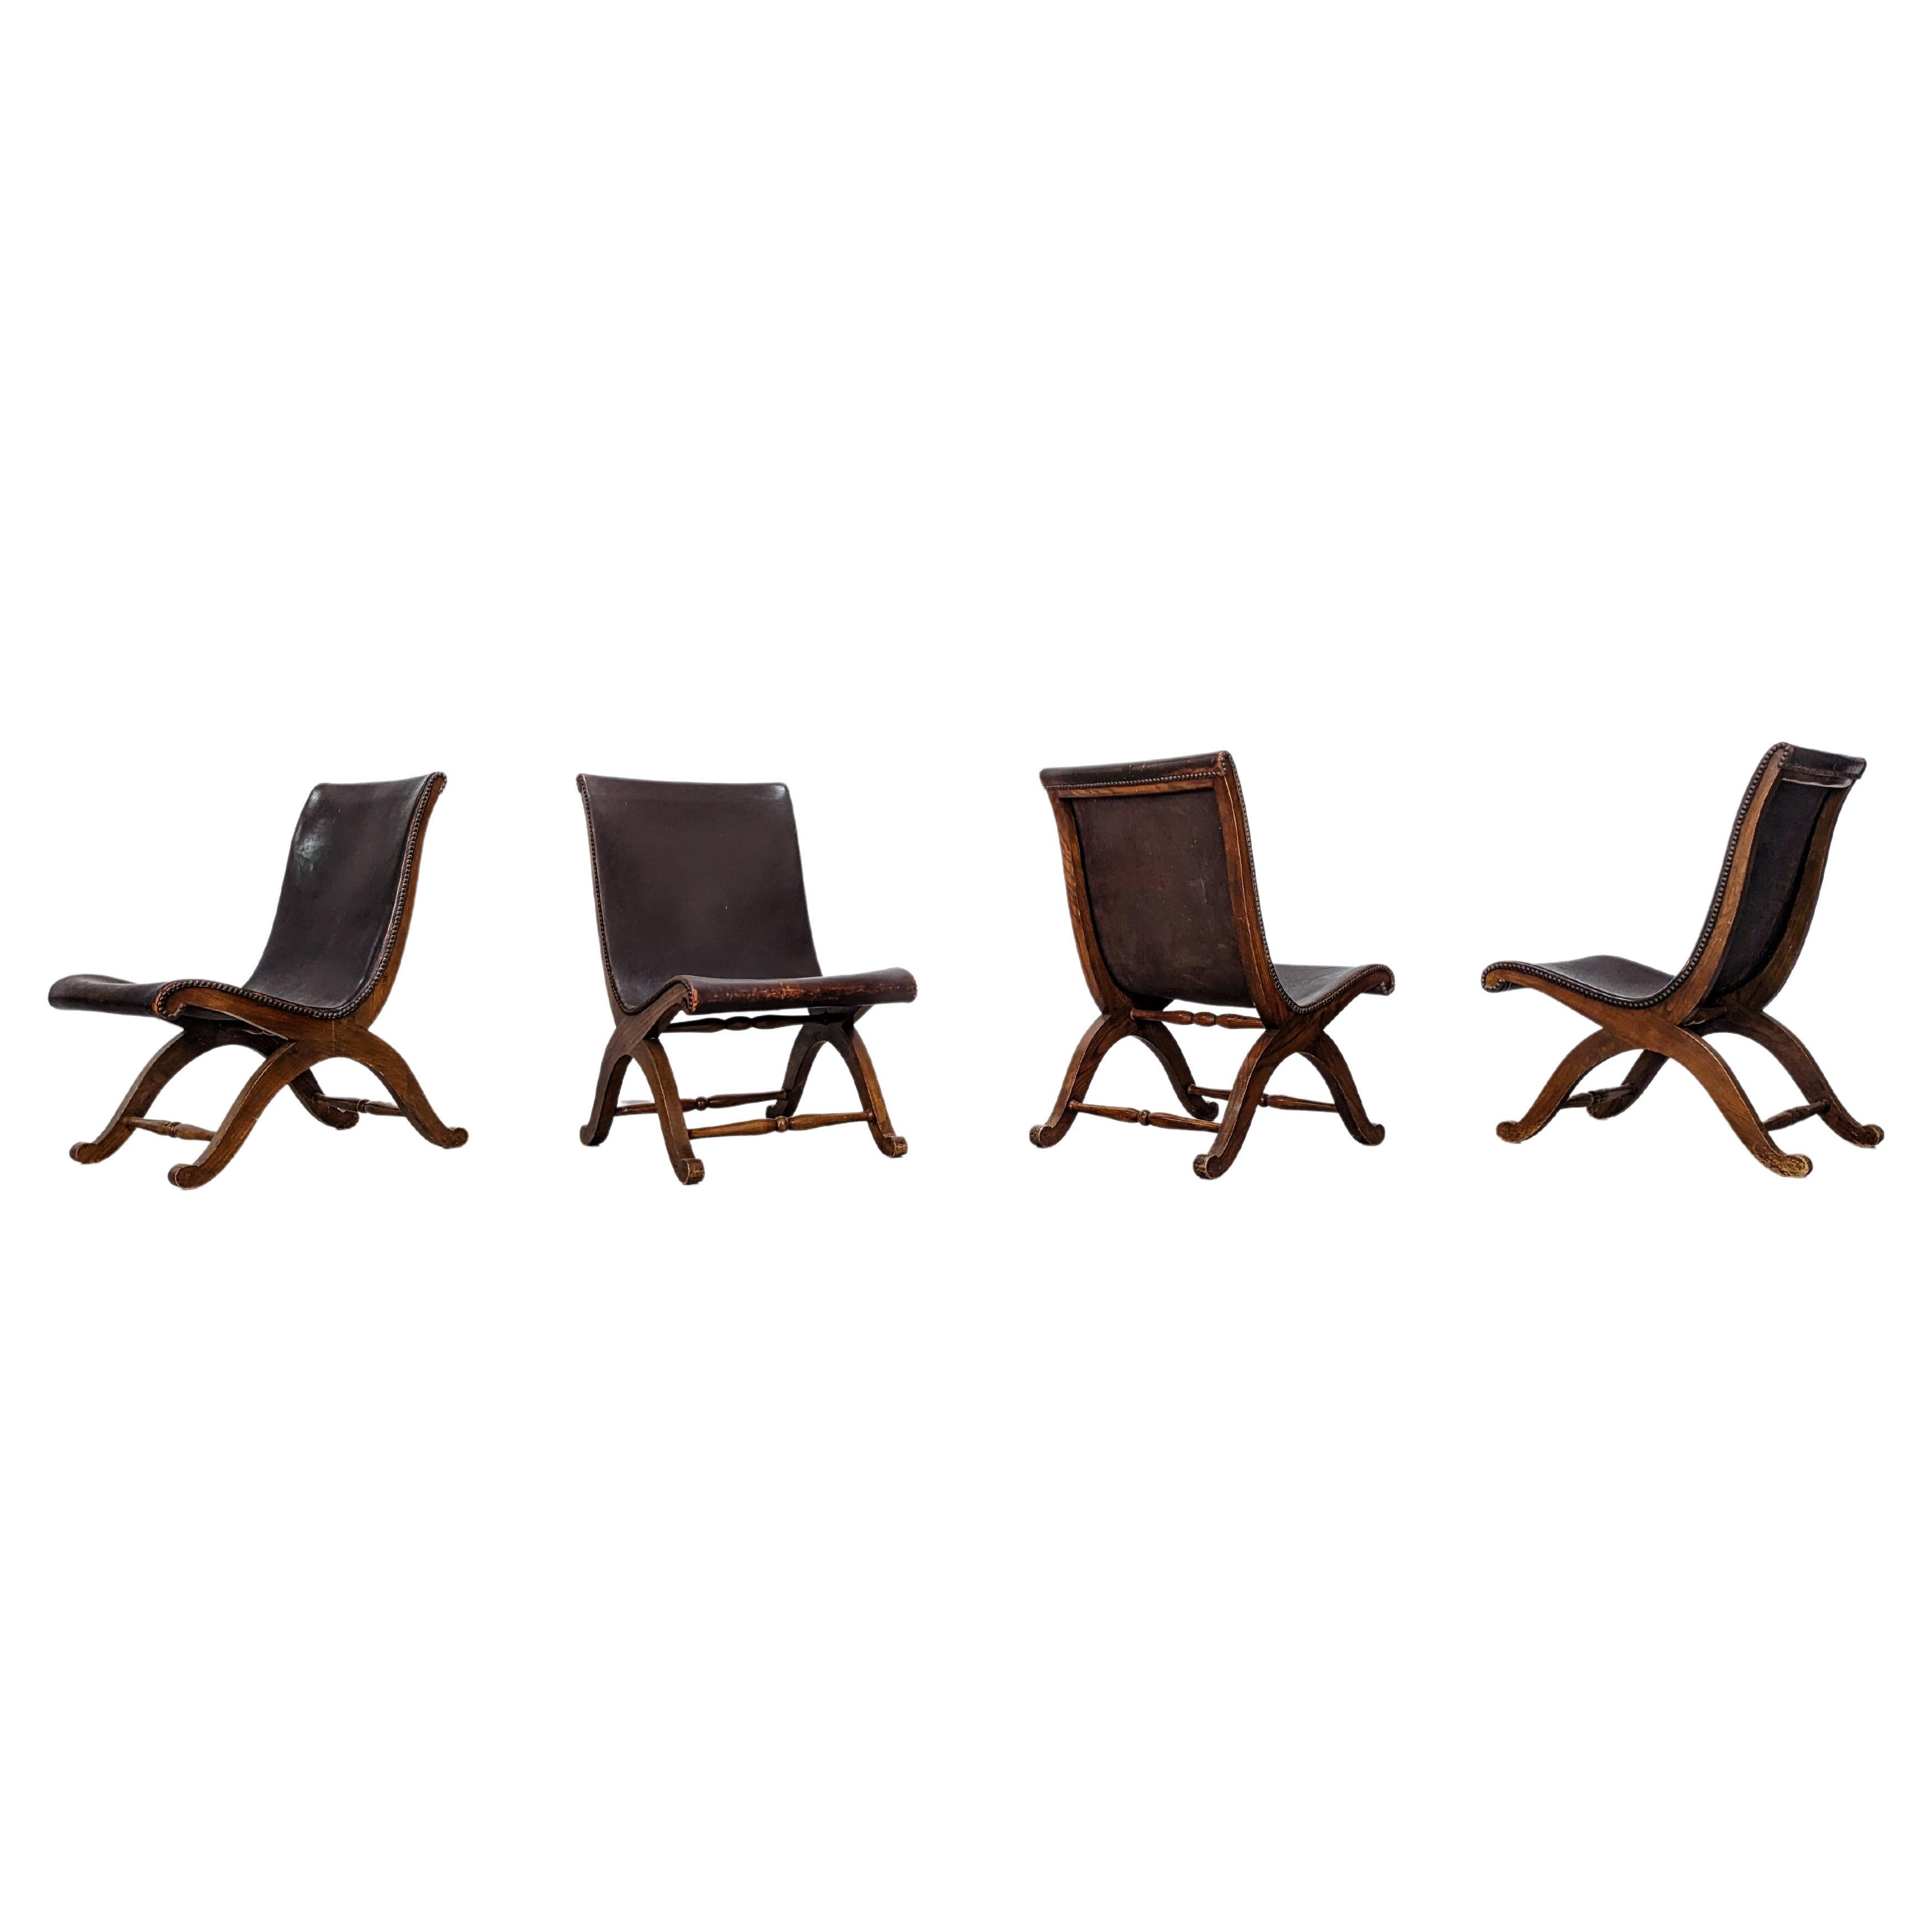 Pierre Lottier Chairs